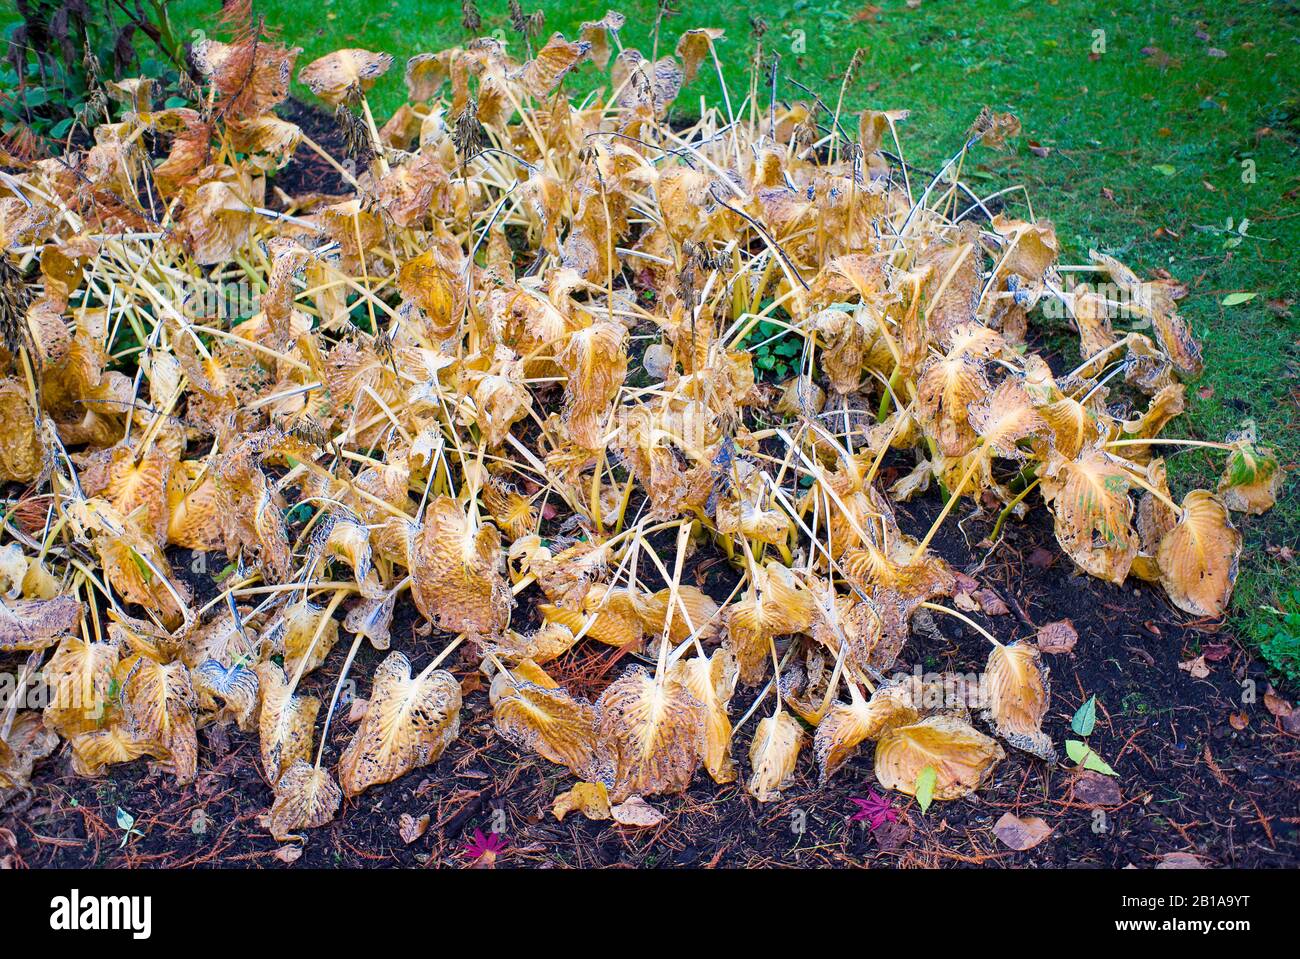 La mort et la carie comme les vieilles feuilles de hosta font place à l'hibernation et à la renaissance de la plante l'année prochaine Banque D'Images